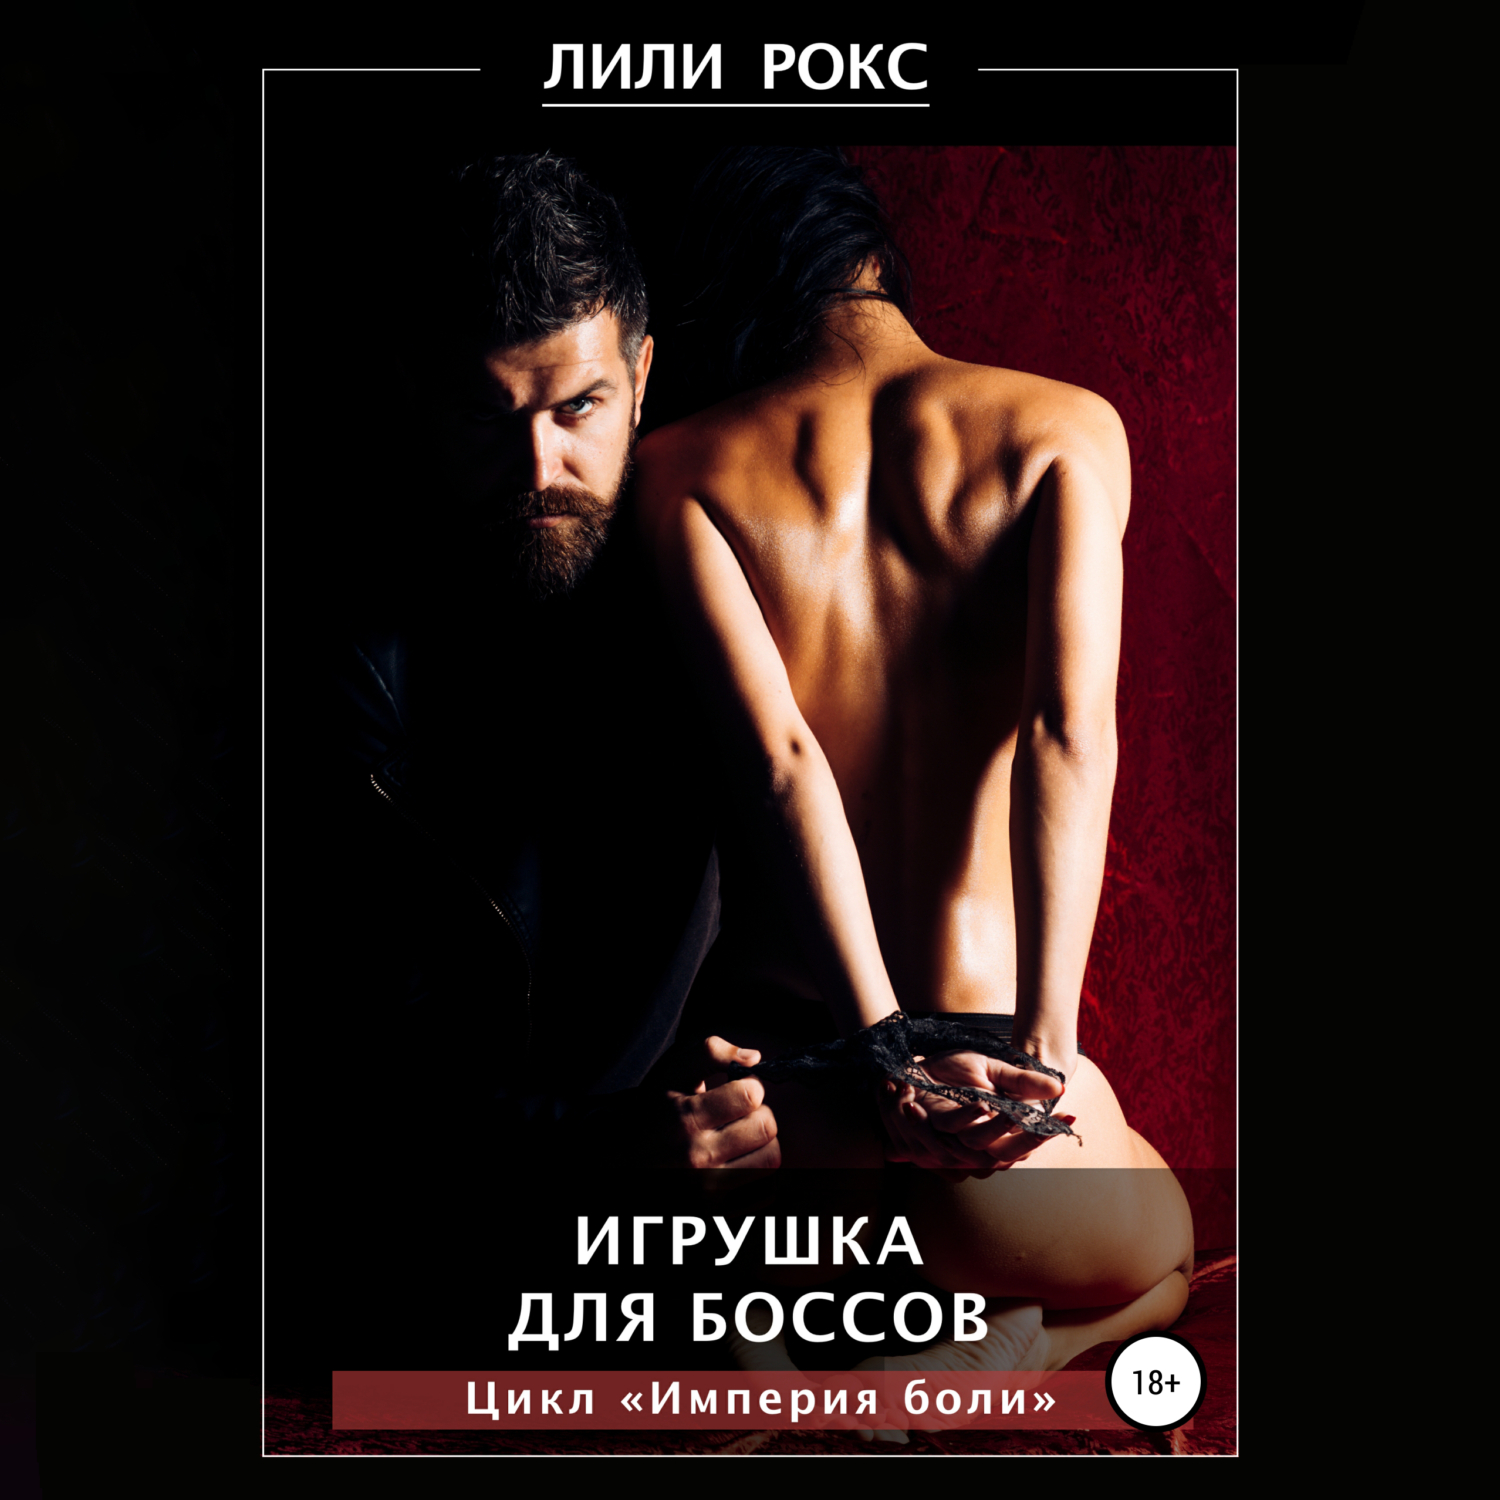 «Секс-тюрьма. Наказание, насилие, пытки» читать онлайн книгу 📙 автора Лилей Рокс на nordwestspb.ru